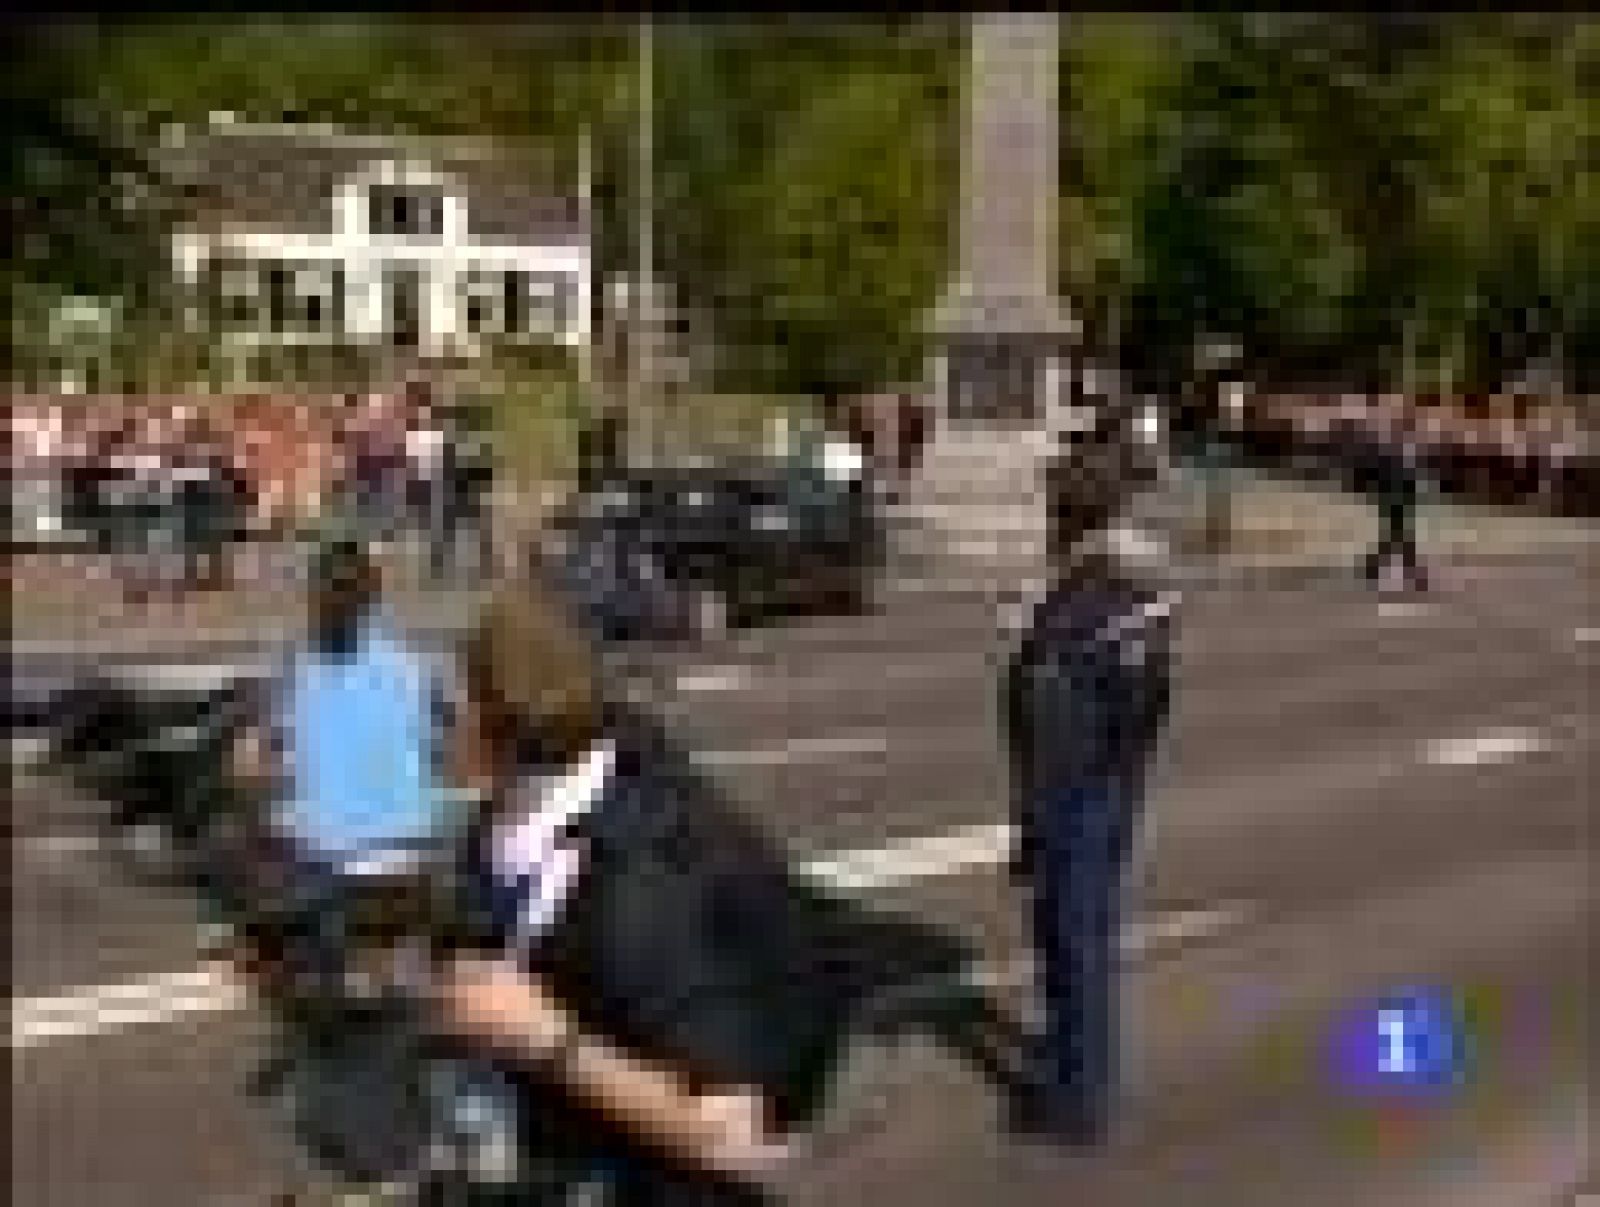 Un coche ha sembrado de muerte el día de la Reina de Holanda al salir de un cruce a gran velocidad y arrollar a la multitud que presenciaba el desfile. Han muerto cuatro personas y 13 están heridas.